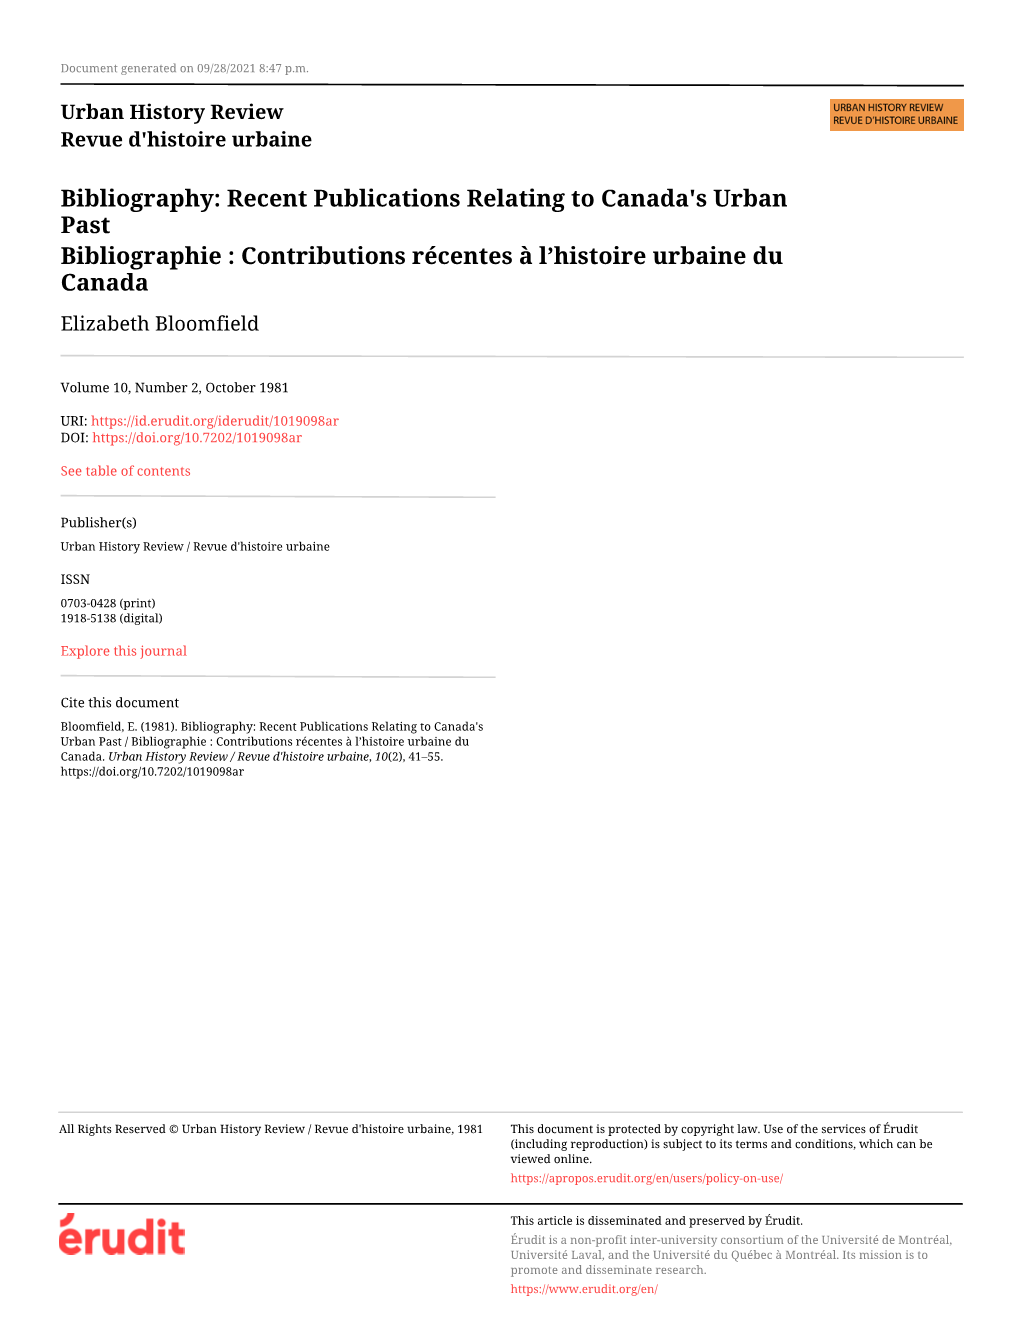 Recent Publications Relating to Canada's Urban Past / Bibliographie : Contributions Récentes À L’Histoire Urbaine Du Canada